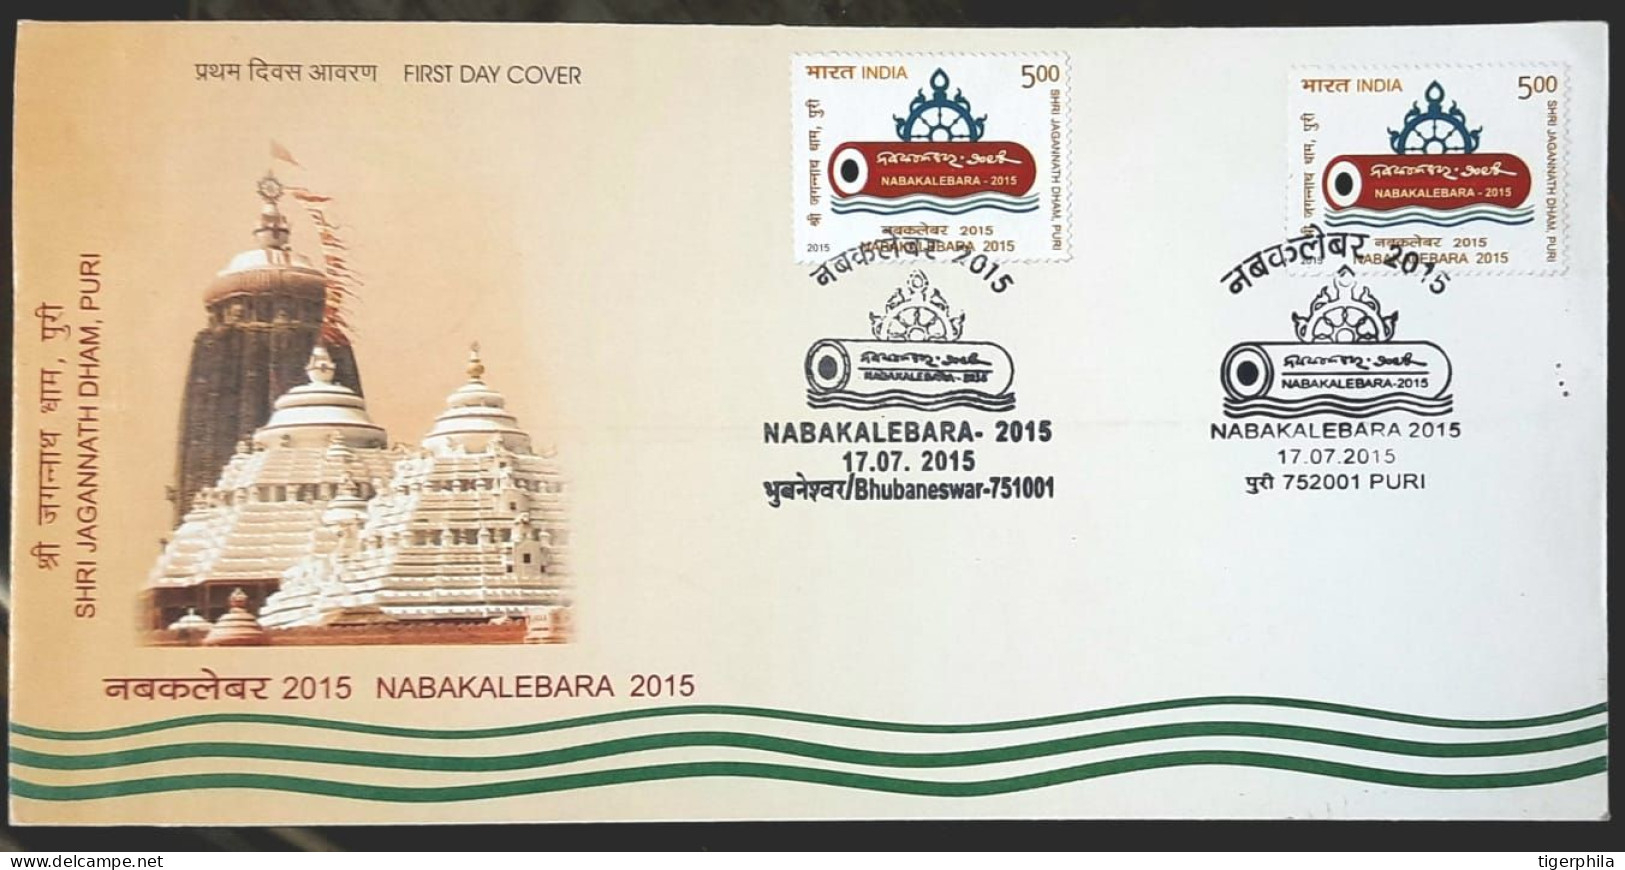 INDIA 2015 Nabakalebara Combination FDC BHUBANESWAR & PURI PLACE CANCELLATION - Covers & Documents